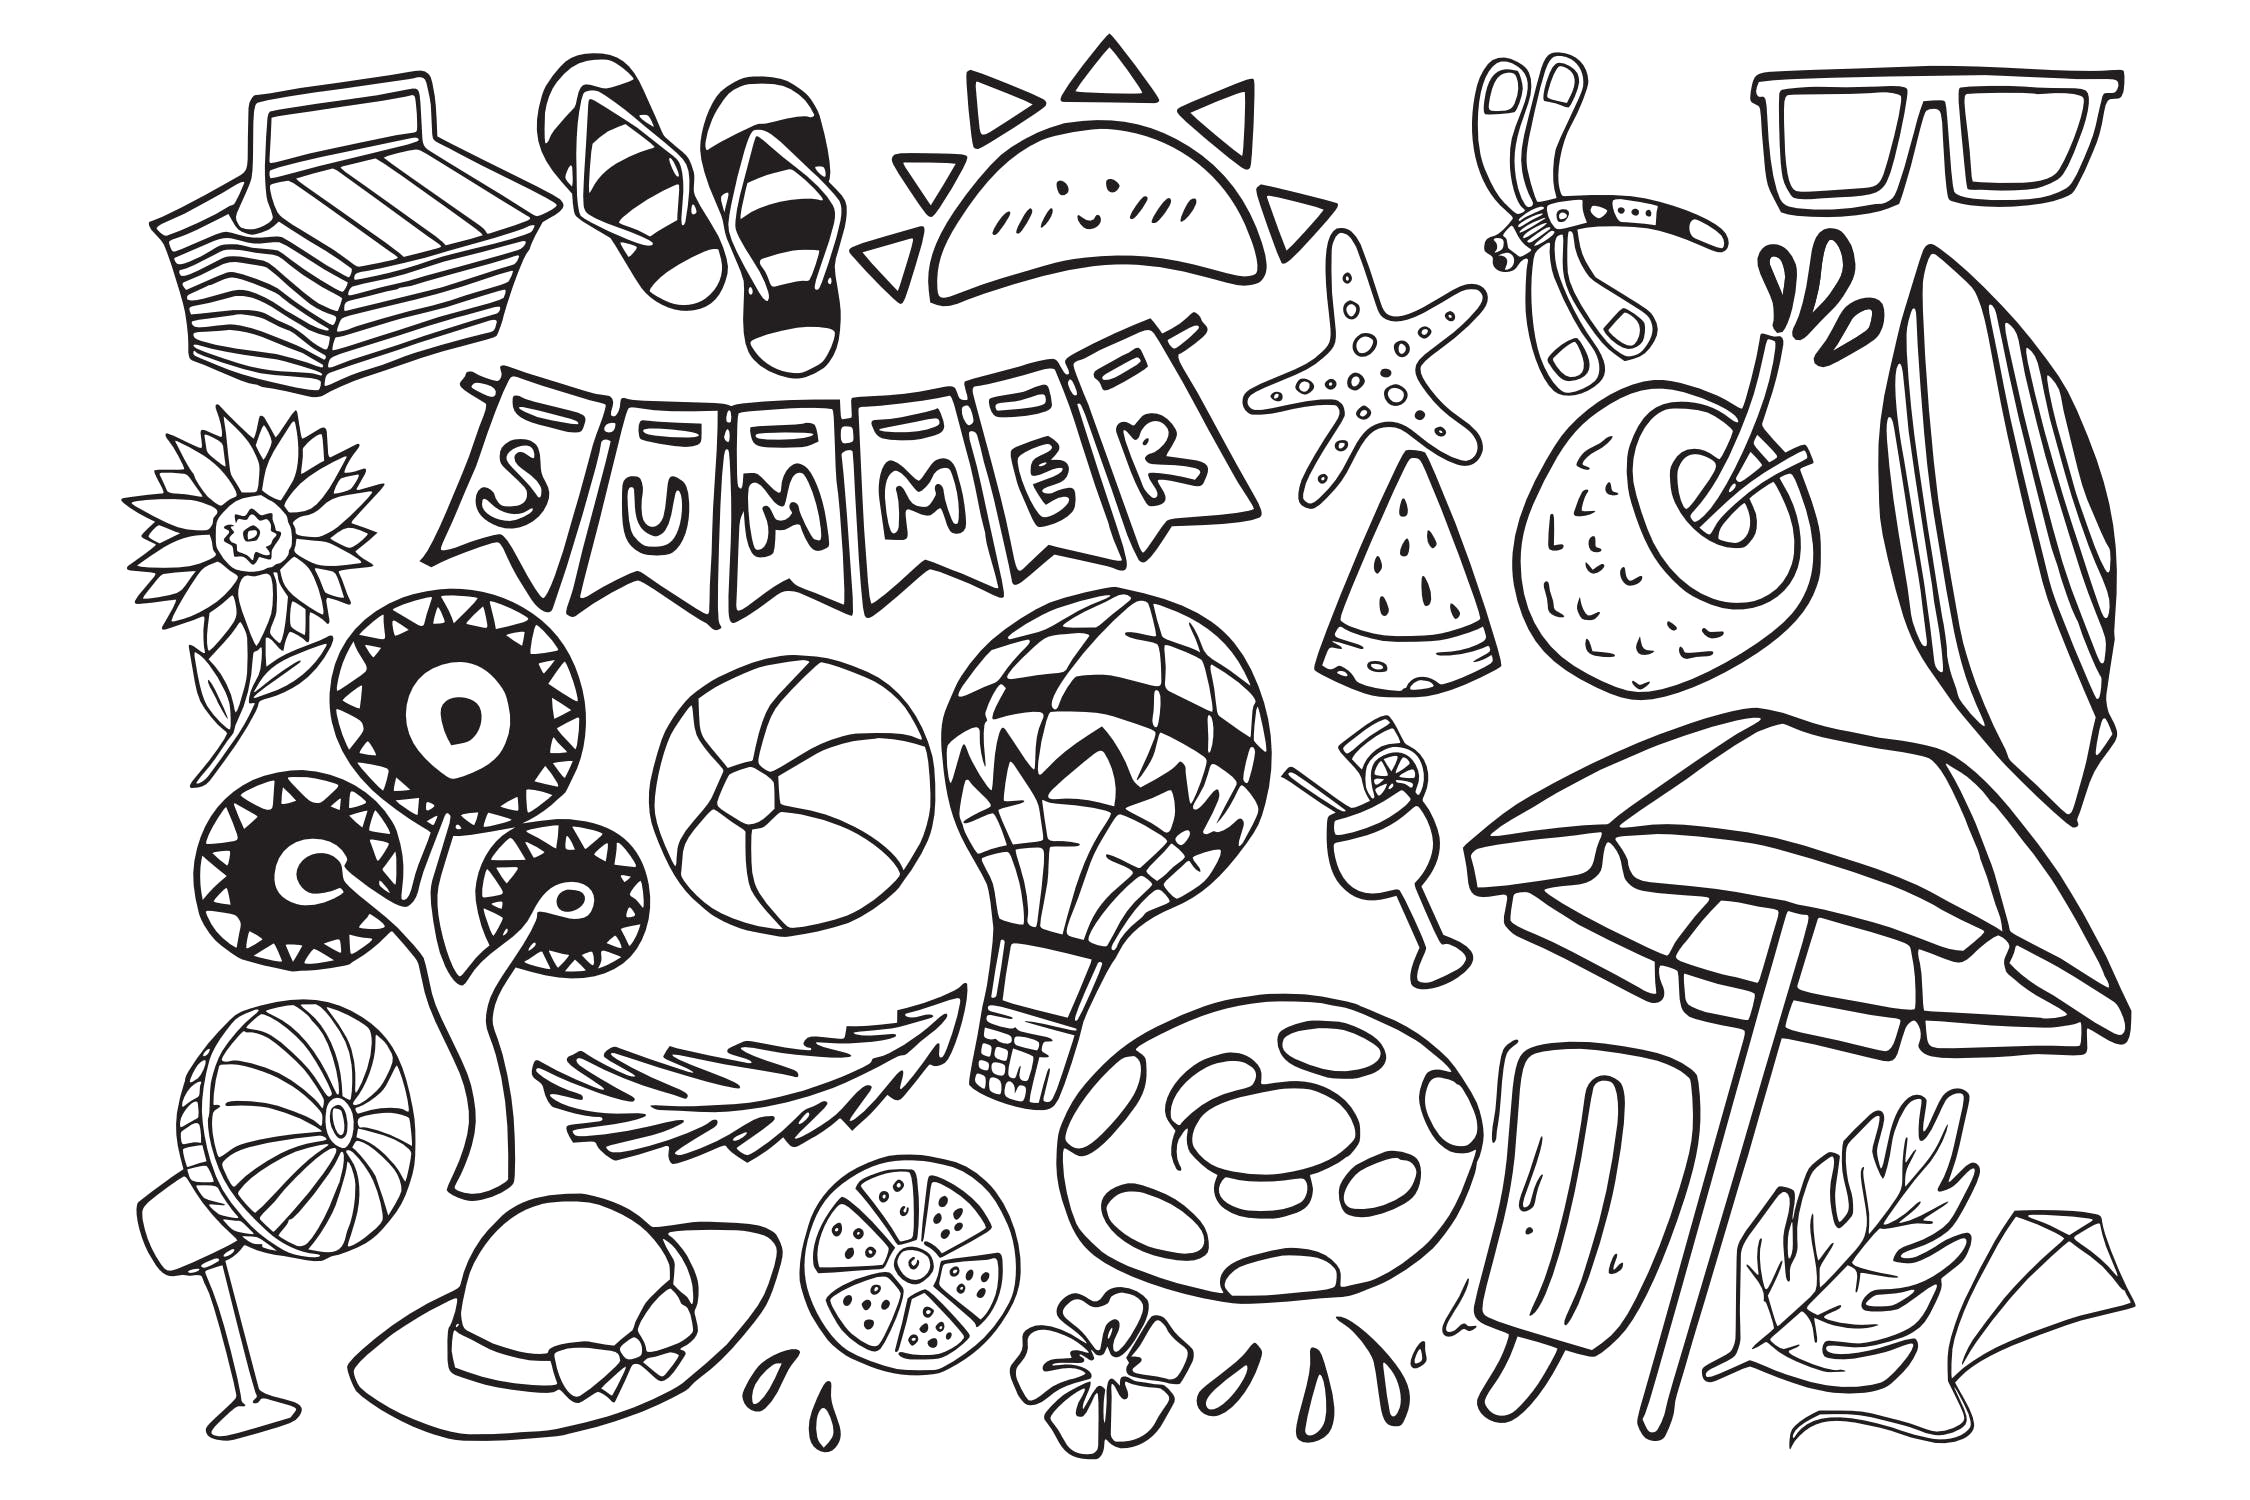 夏季主题涂鸦手绘矢量图案素材 Summer Stuff Doodle Vector插图(1)